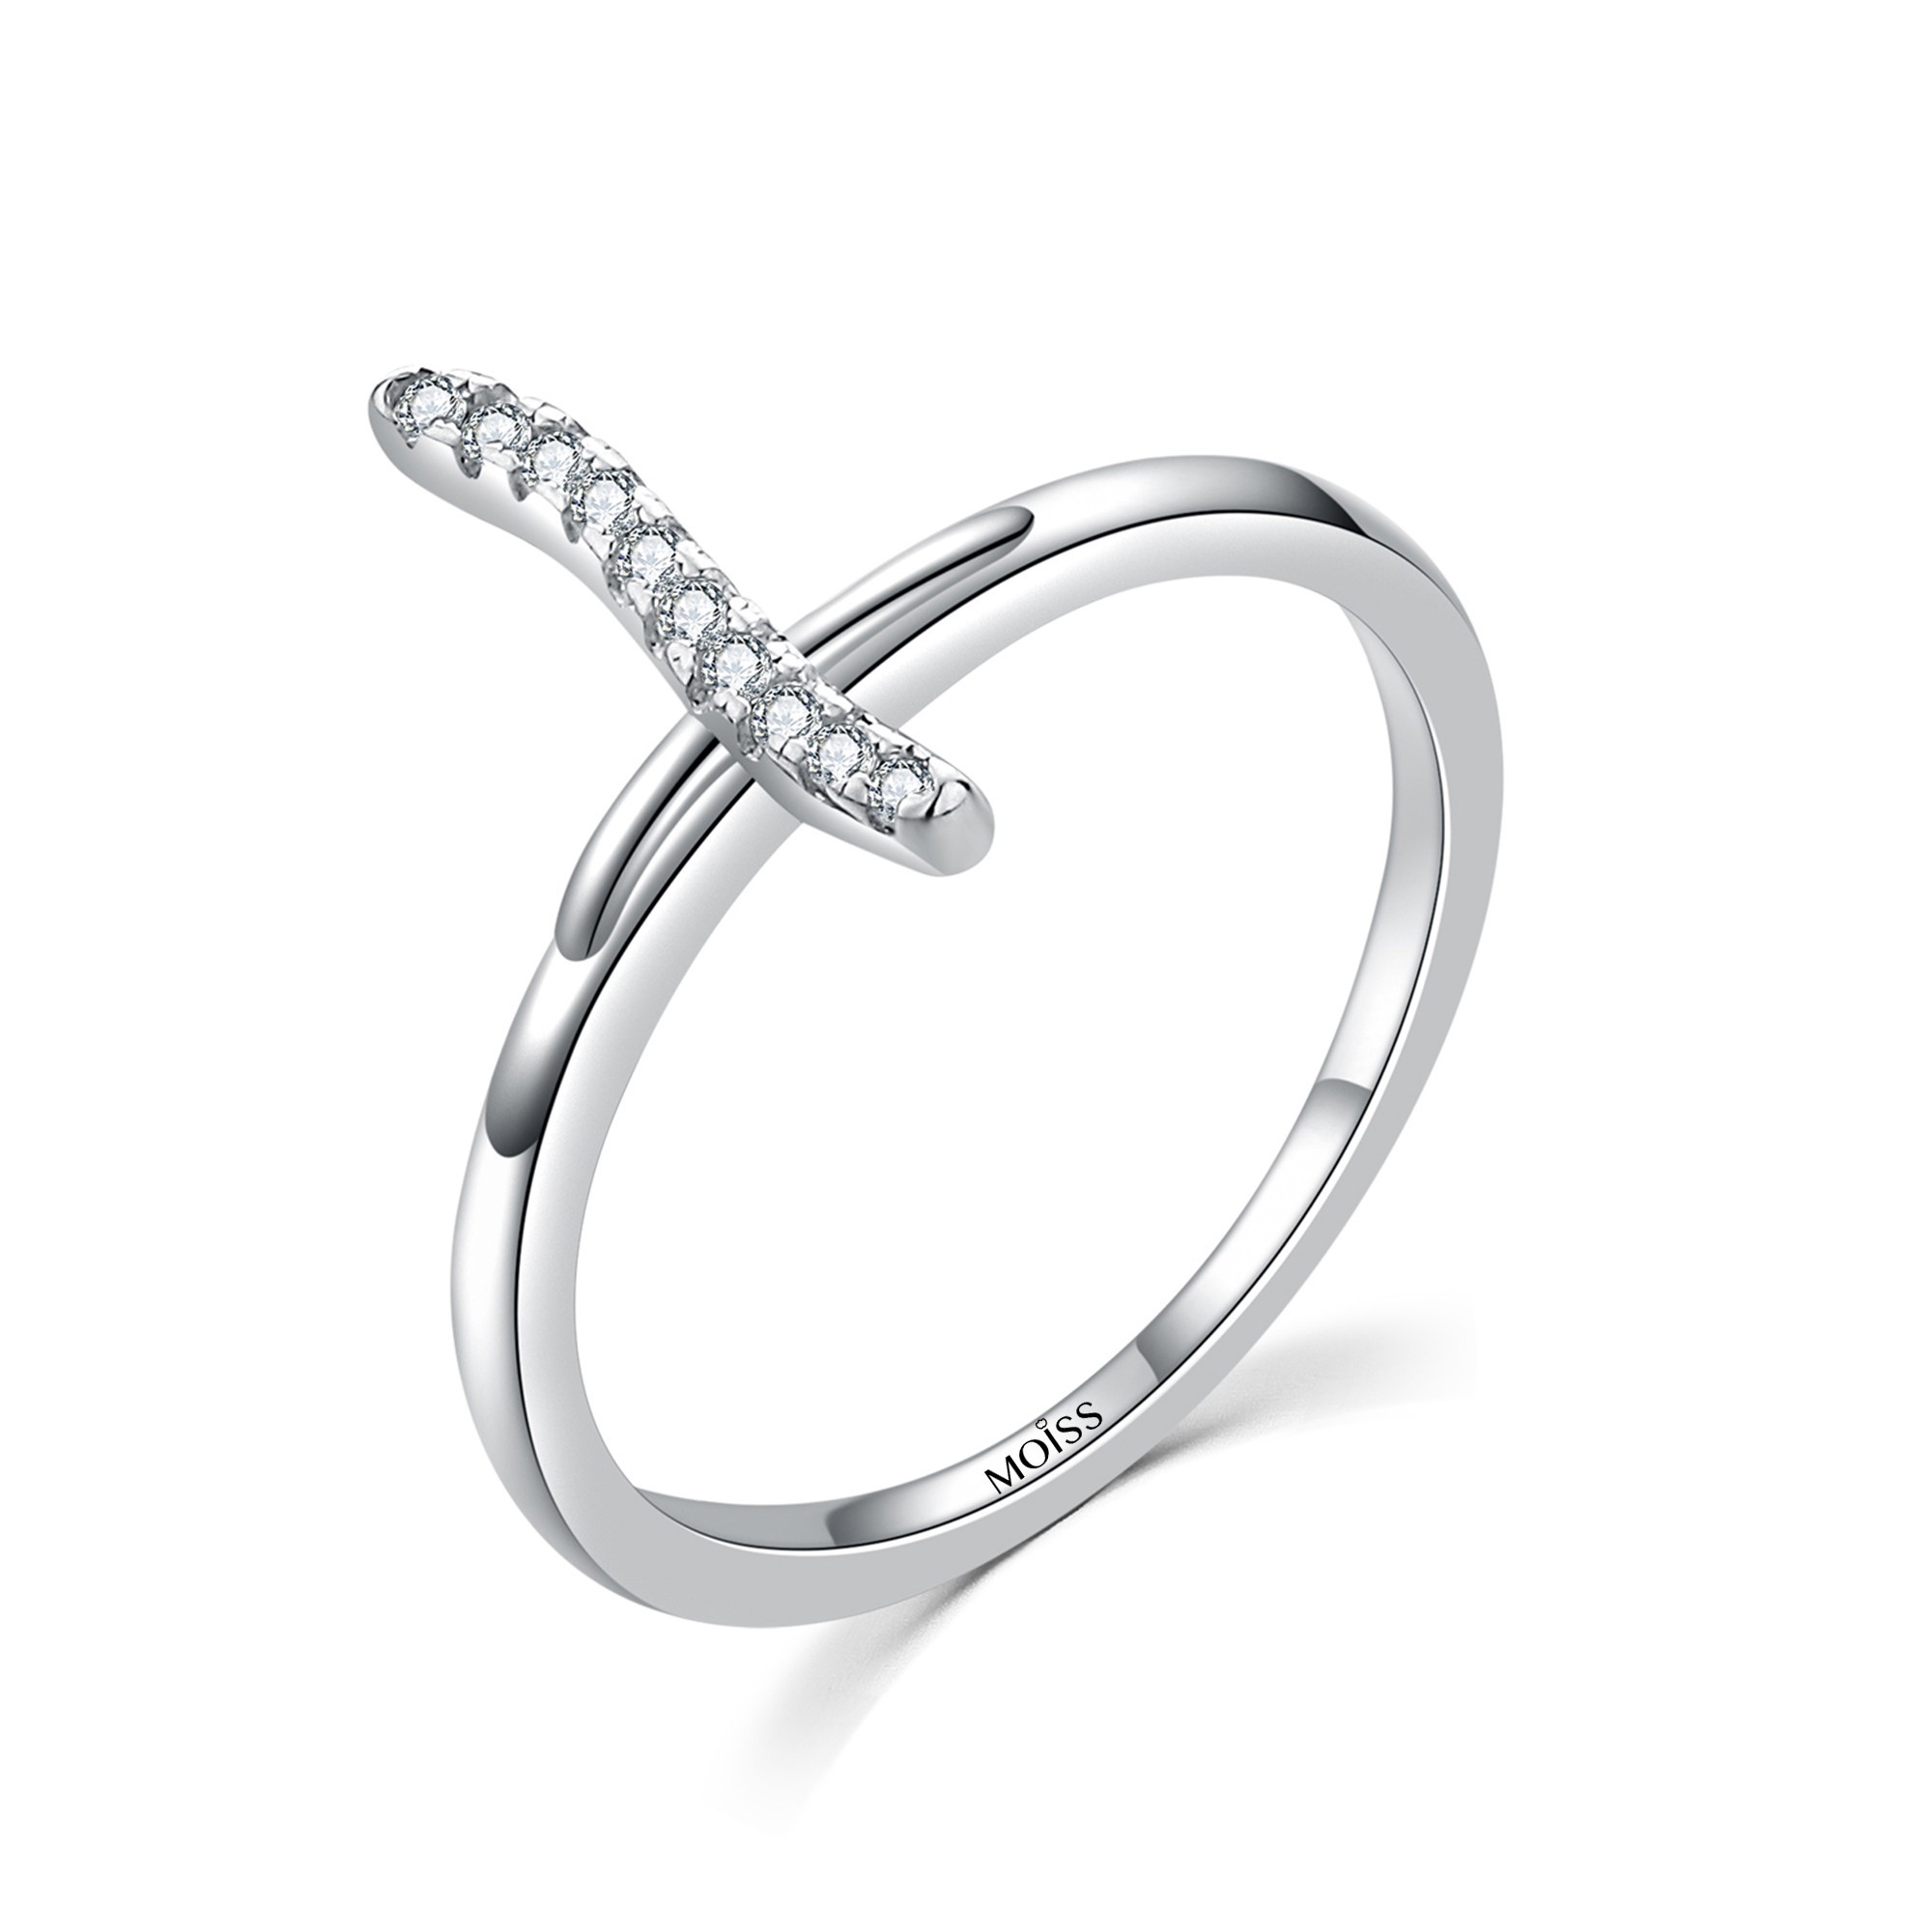 MOISS Moiss stříbrný prsten s bílým zirkonem KŘÍZEK R0001889 Velikost 49 mm R0001889